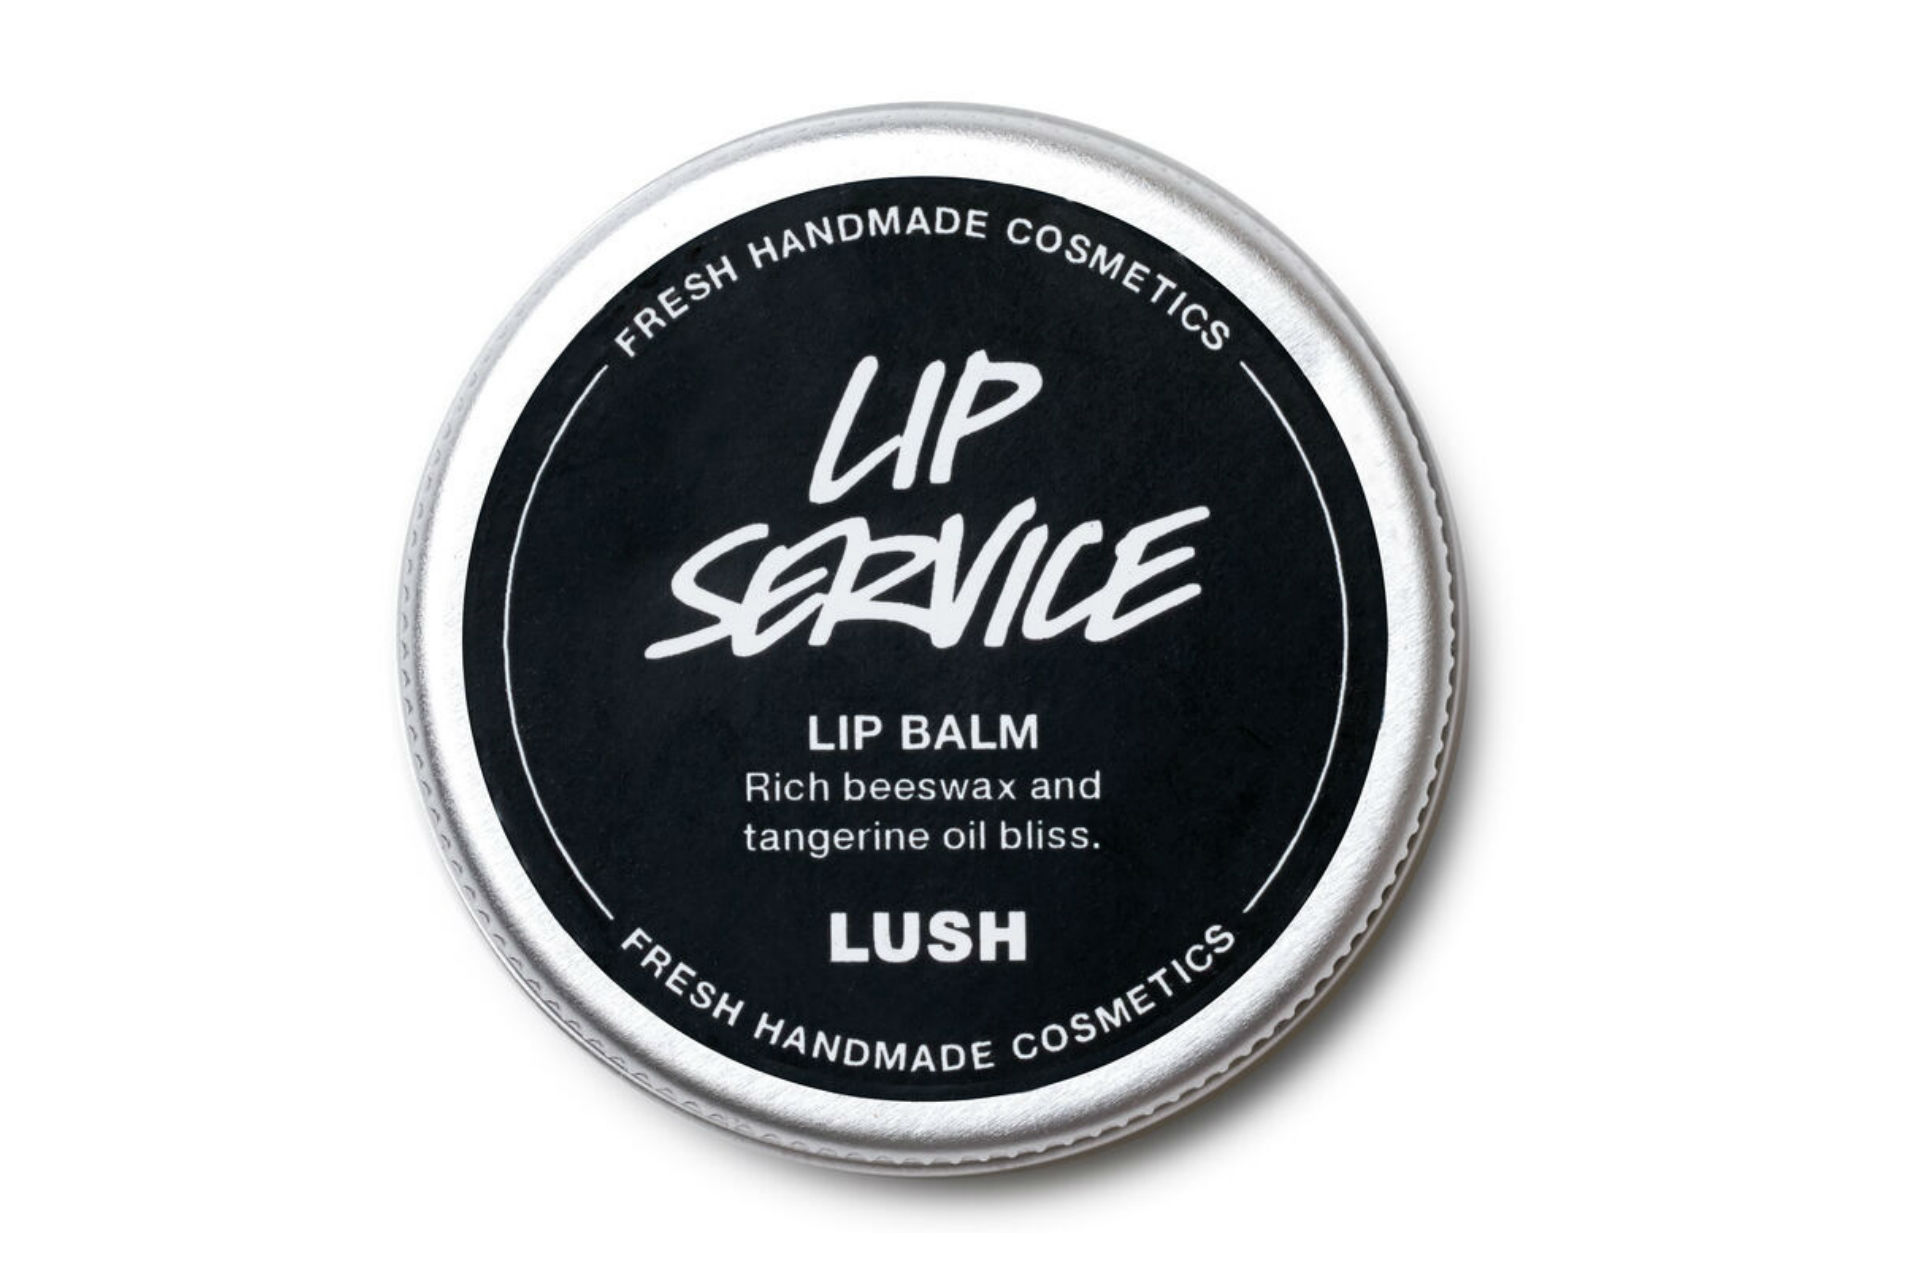 Lip service lip balm